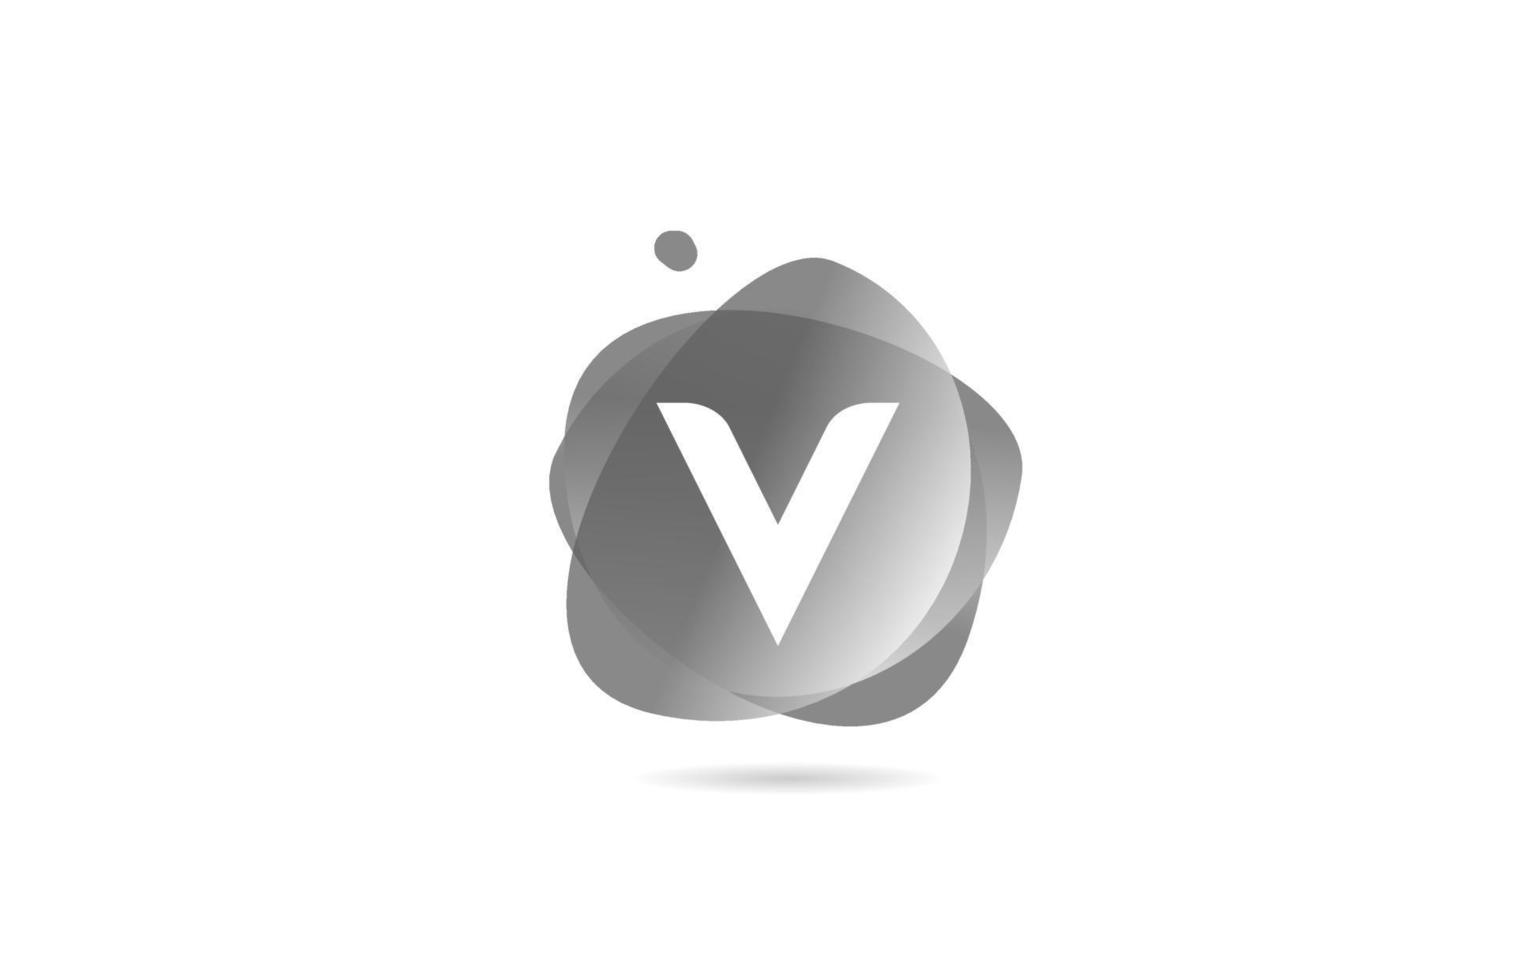 schwarz-weißes V-Alphabet-Buchstaben-Logo für Unternehmen und Unternehmen mit Farbverlaufsdesign. Pastellfarben für Corporate Identity vektor